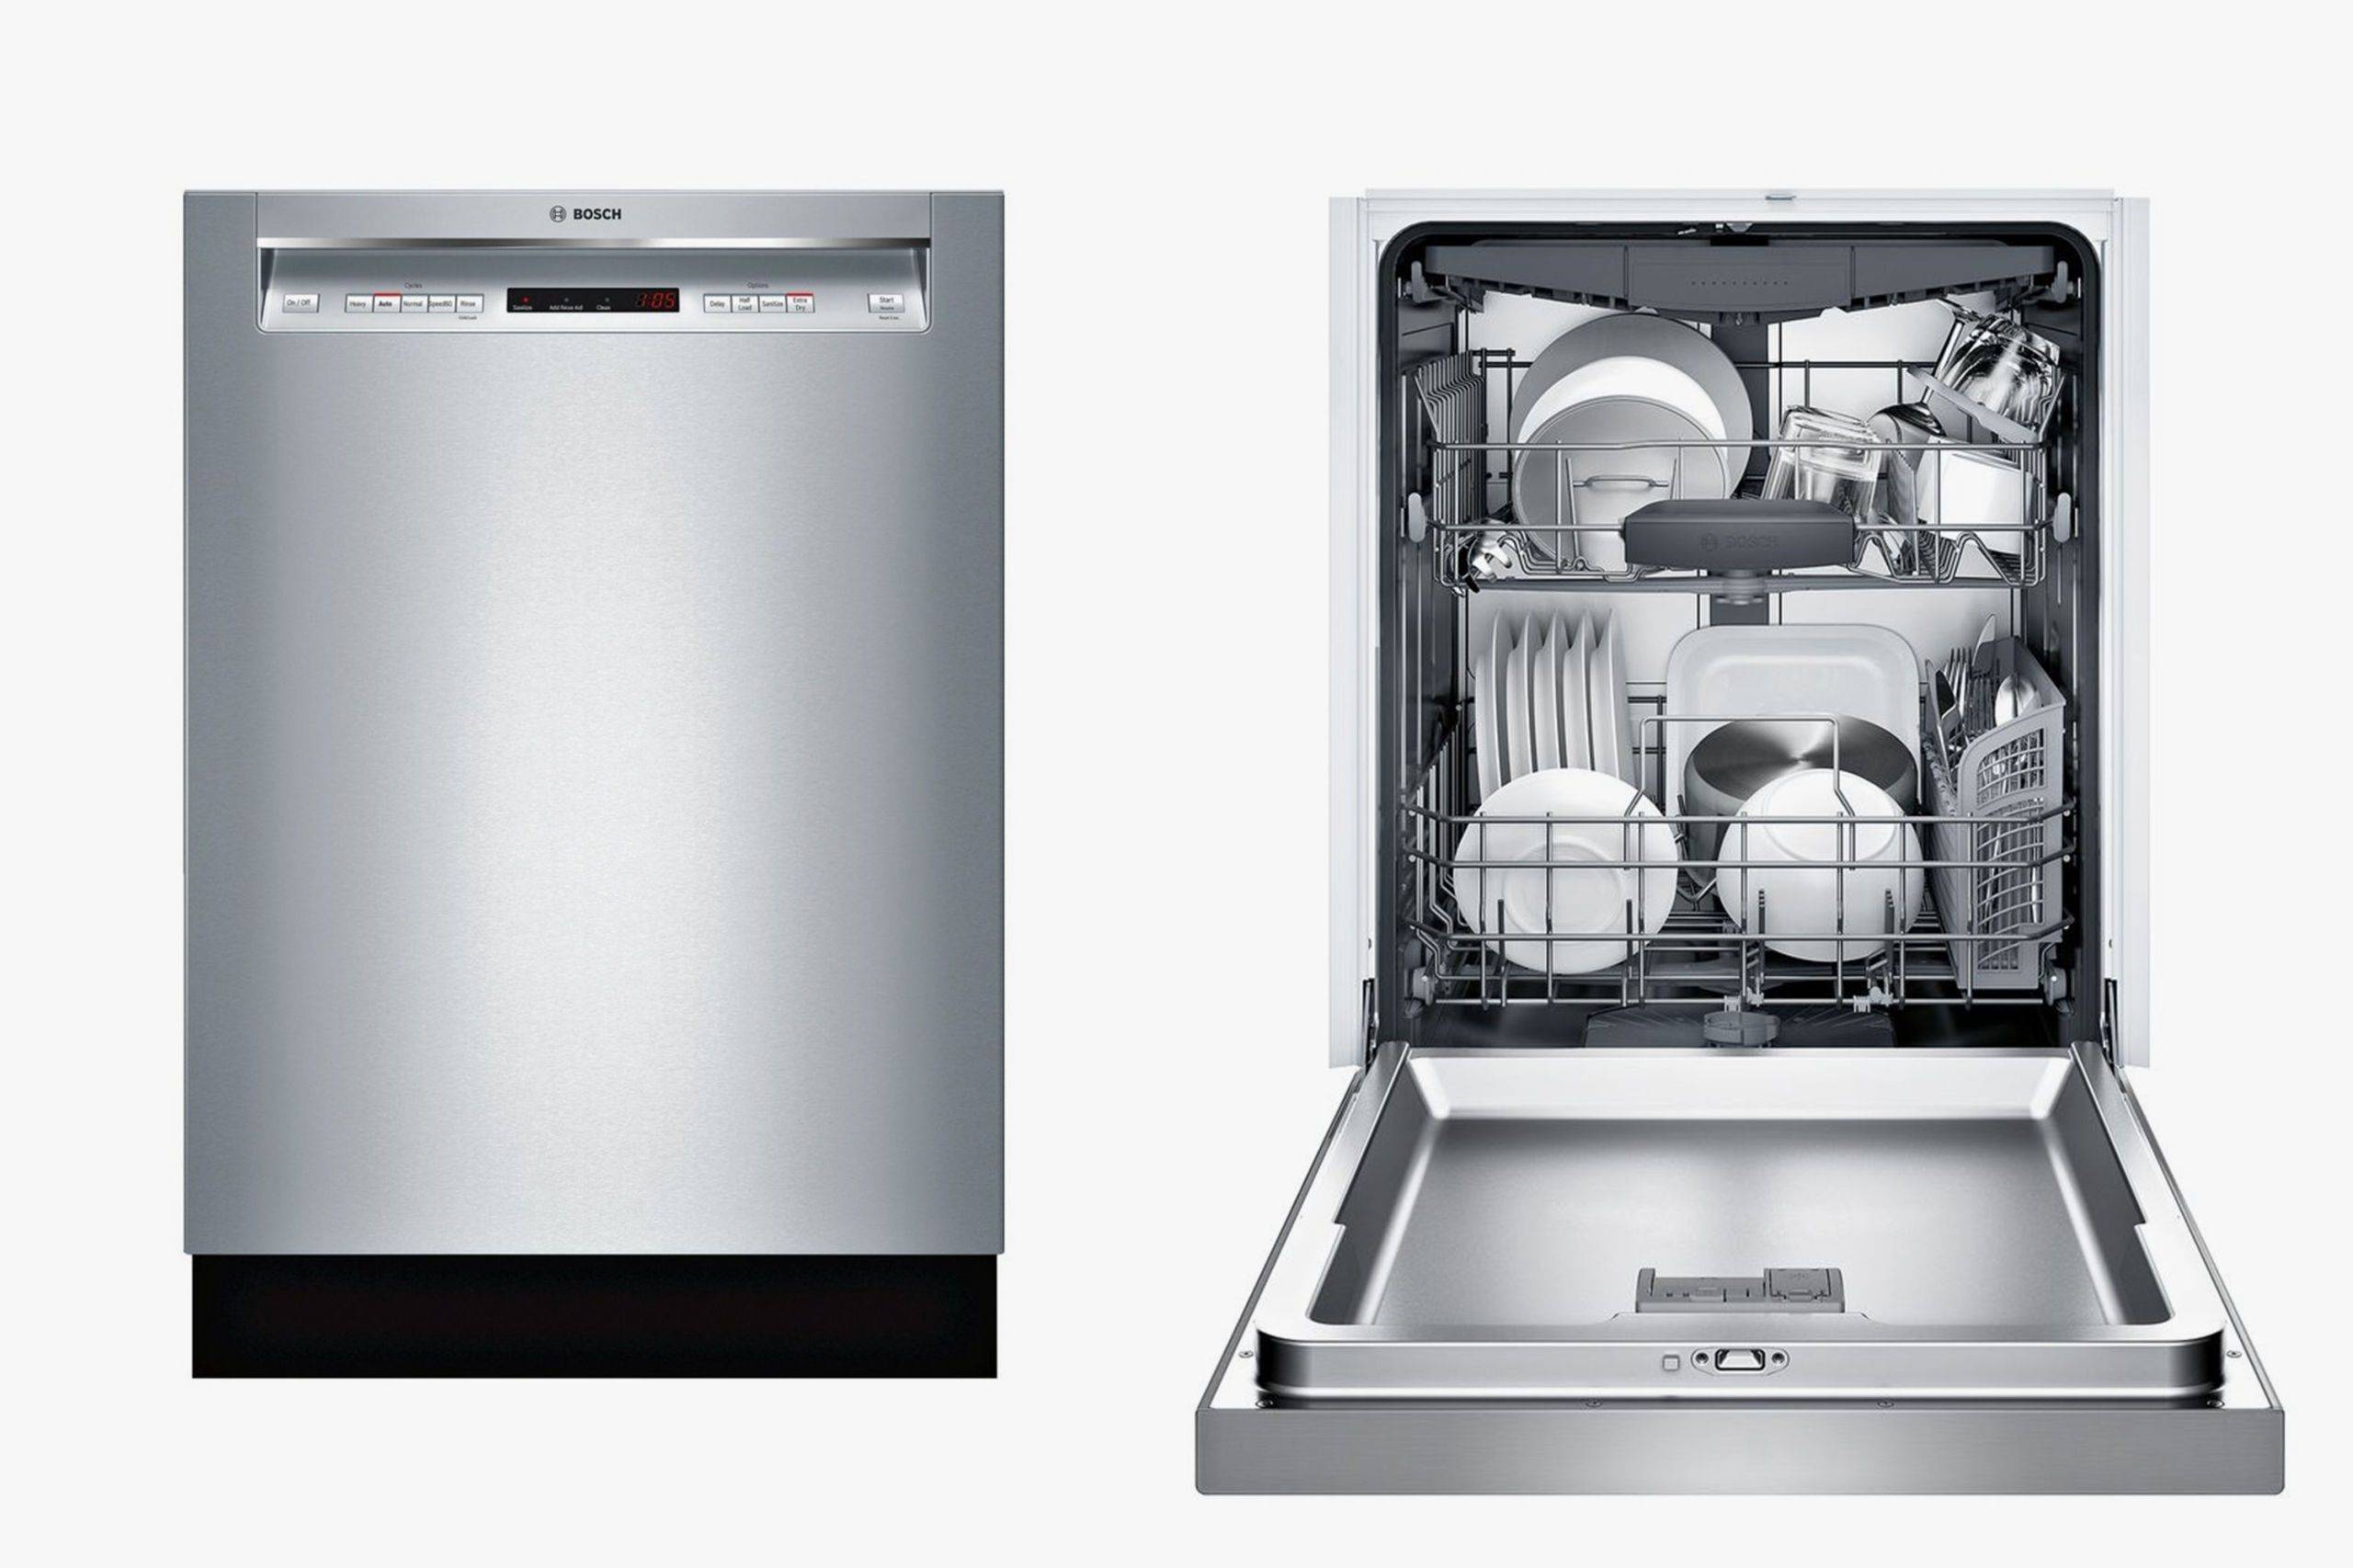 Топ 15 лучших встраиваемых посудомоечных машин 60 см - рейтинг 2021 года
топ 15 лучших встраиваемых посудомоечных машин 60 см - рейтинг 2021 года